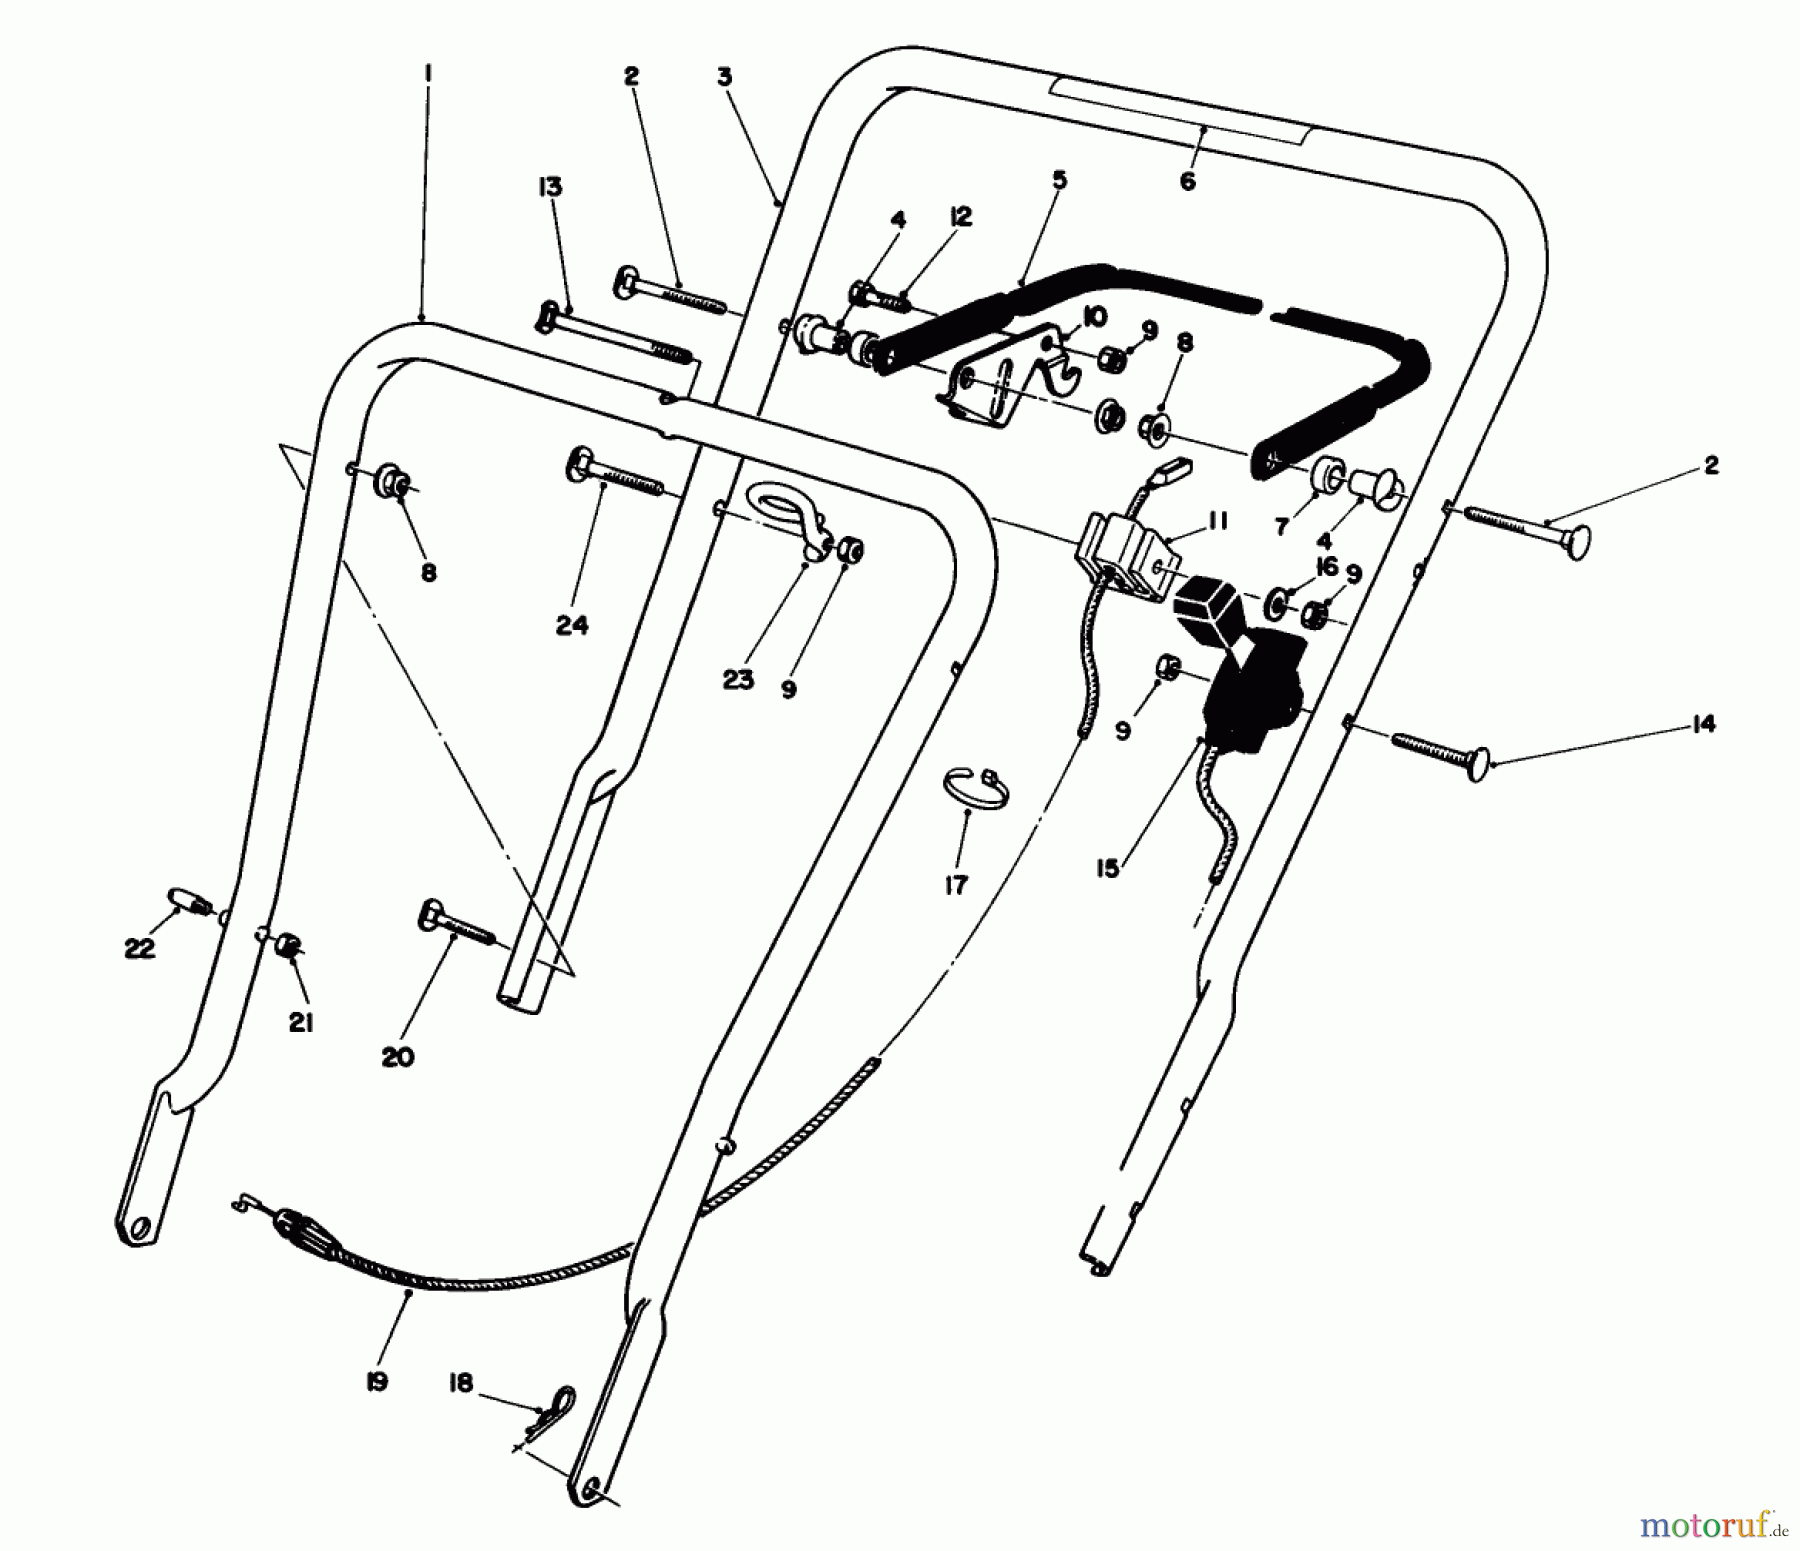  Toro Neu Mowers, Walk-Behind Seite 1 16400 - Toro Lawnmower, 1993 (3900001-3999999) HANDLE ASSEMBLY